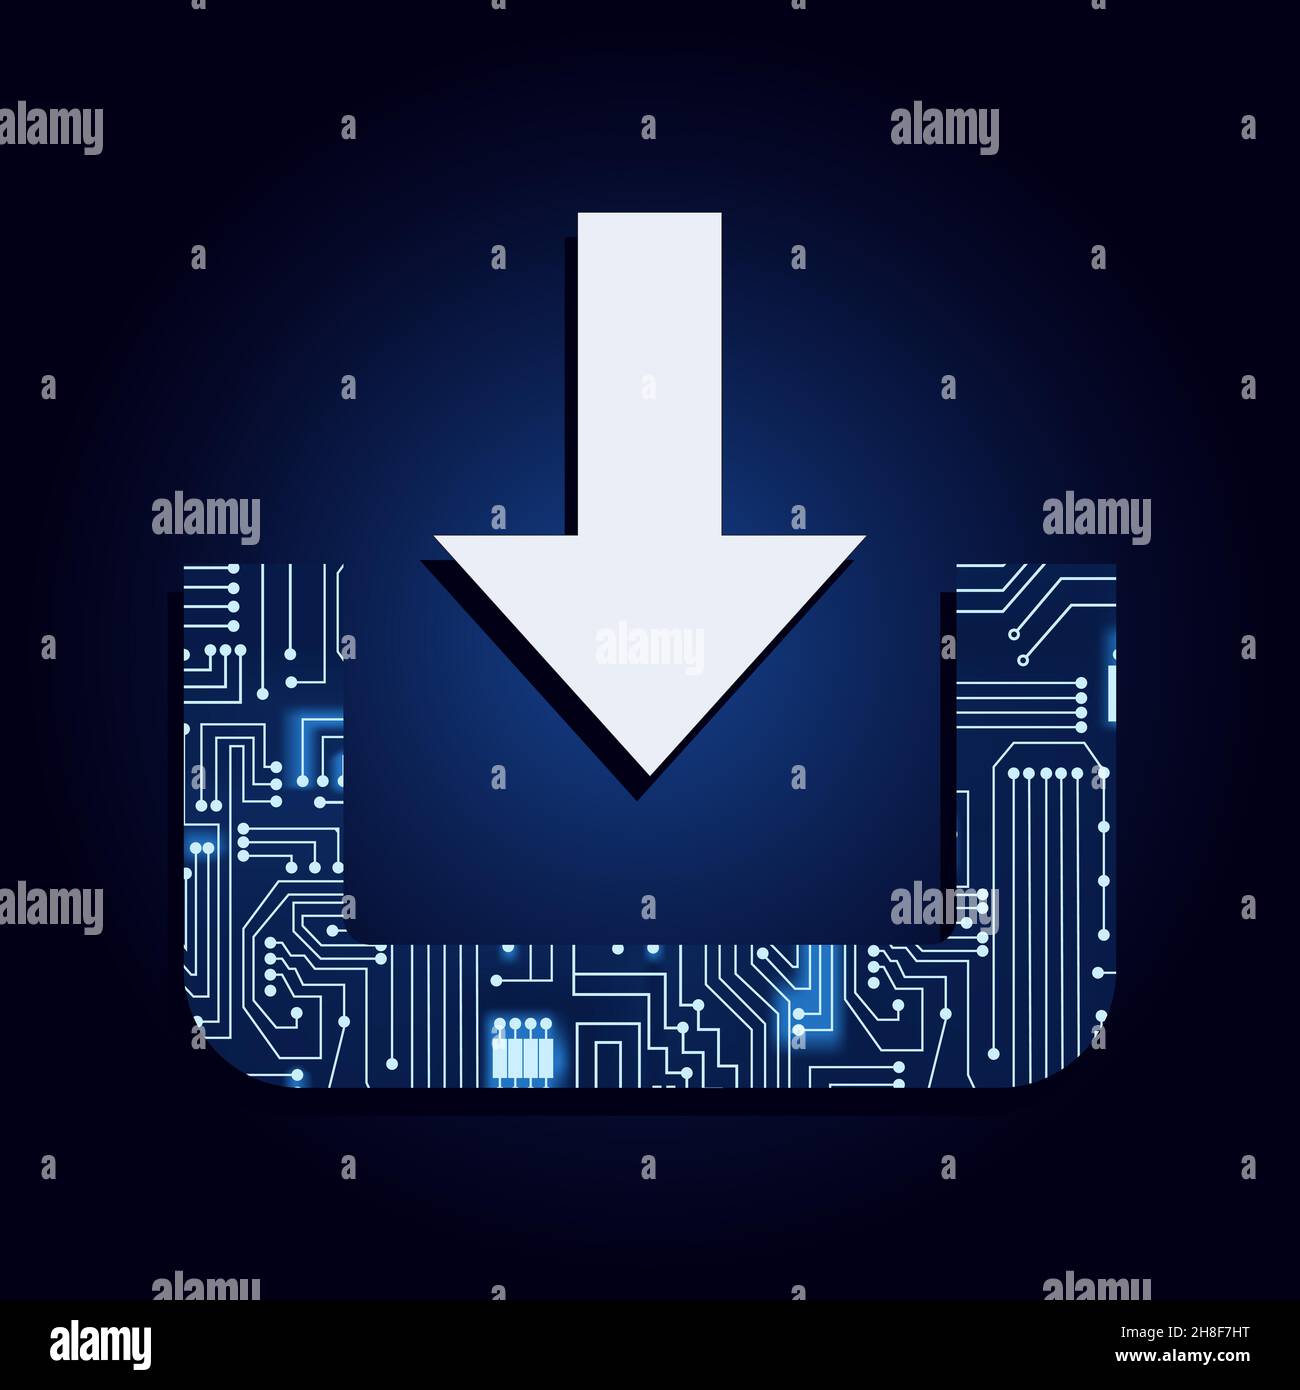 Download-Symbol mit elektronischer Schaltung. Blau und Verlaufshintergrund. Nach unten zeigender Pfeil, der den Datendownload darstellt. Stock Vektor